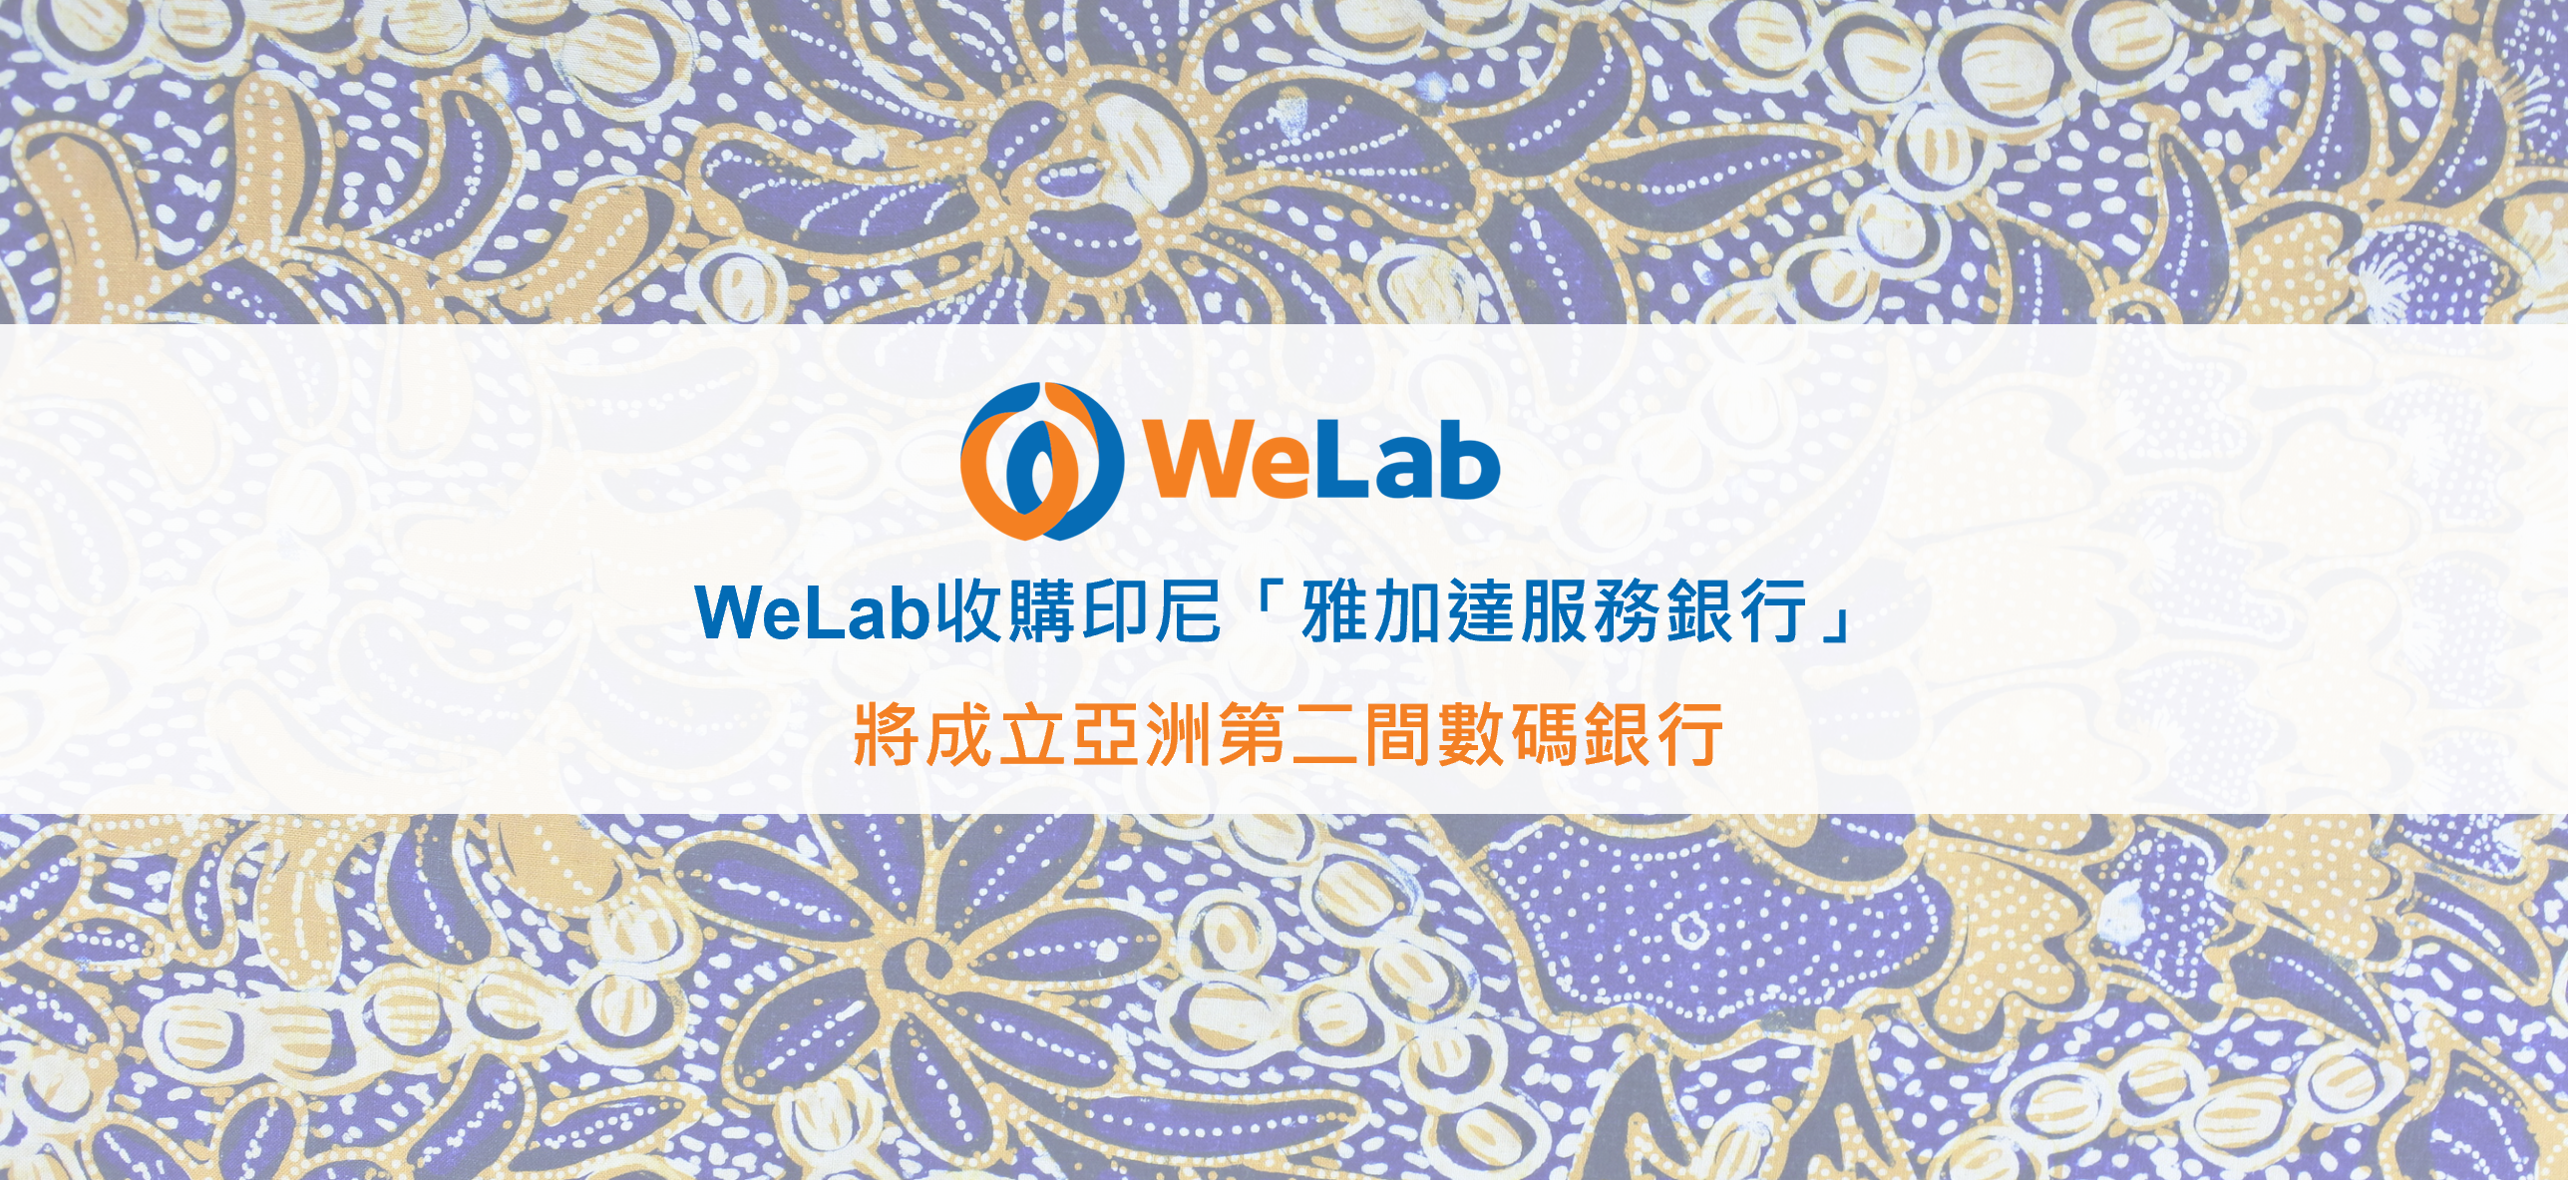 WeLab進一步拓展數碼銀行業務至印尼